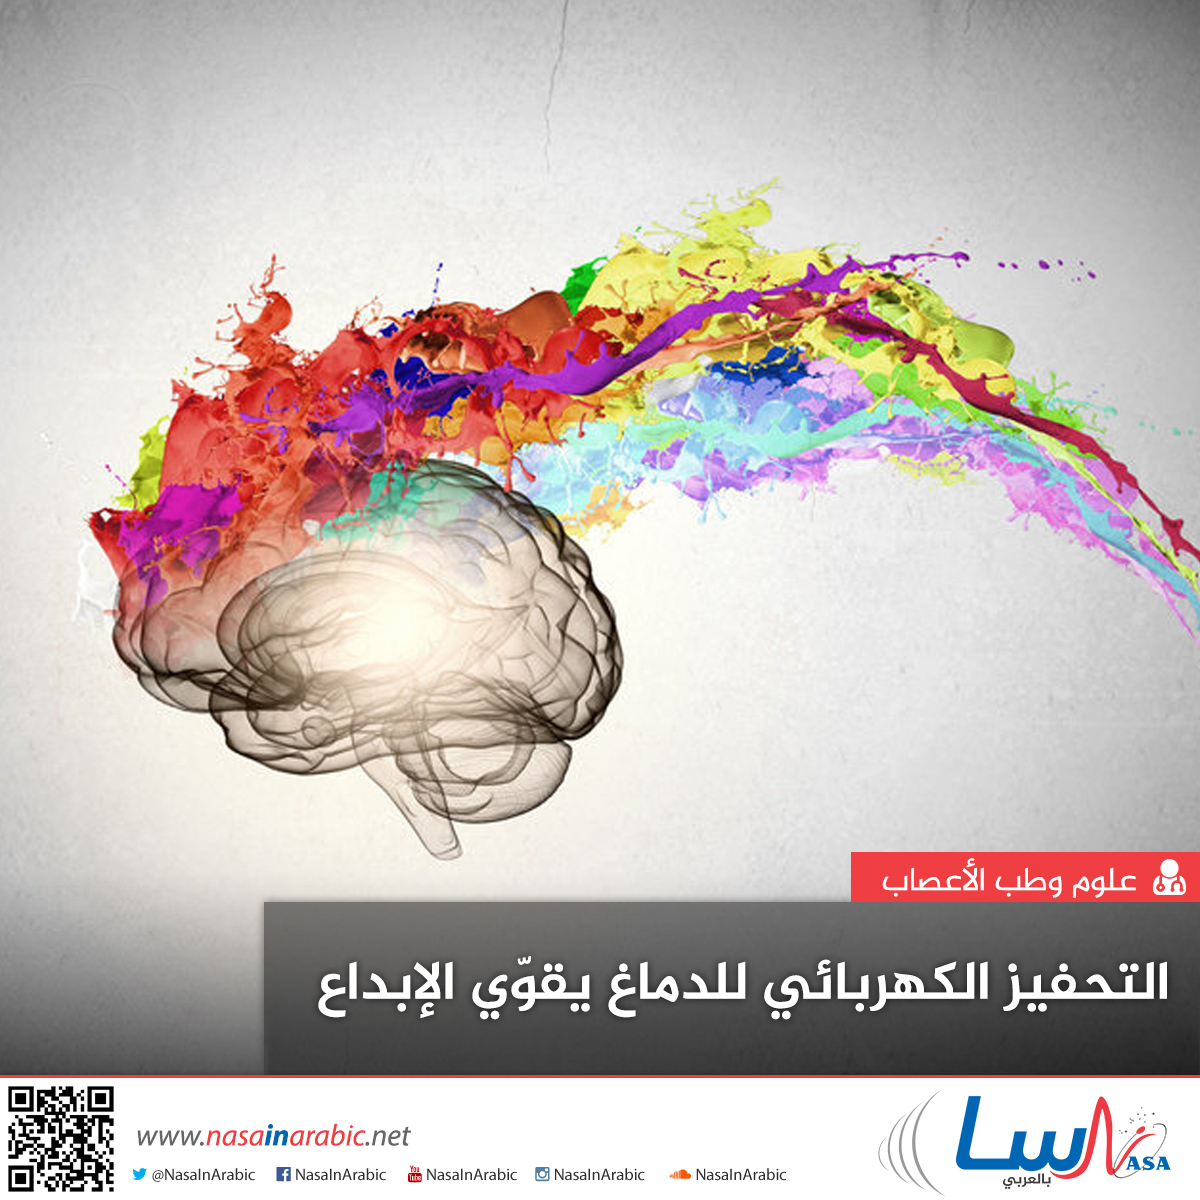 التحفيز الكهربائي للدماغ يقوّي الإبداع